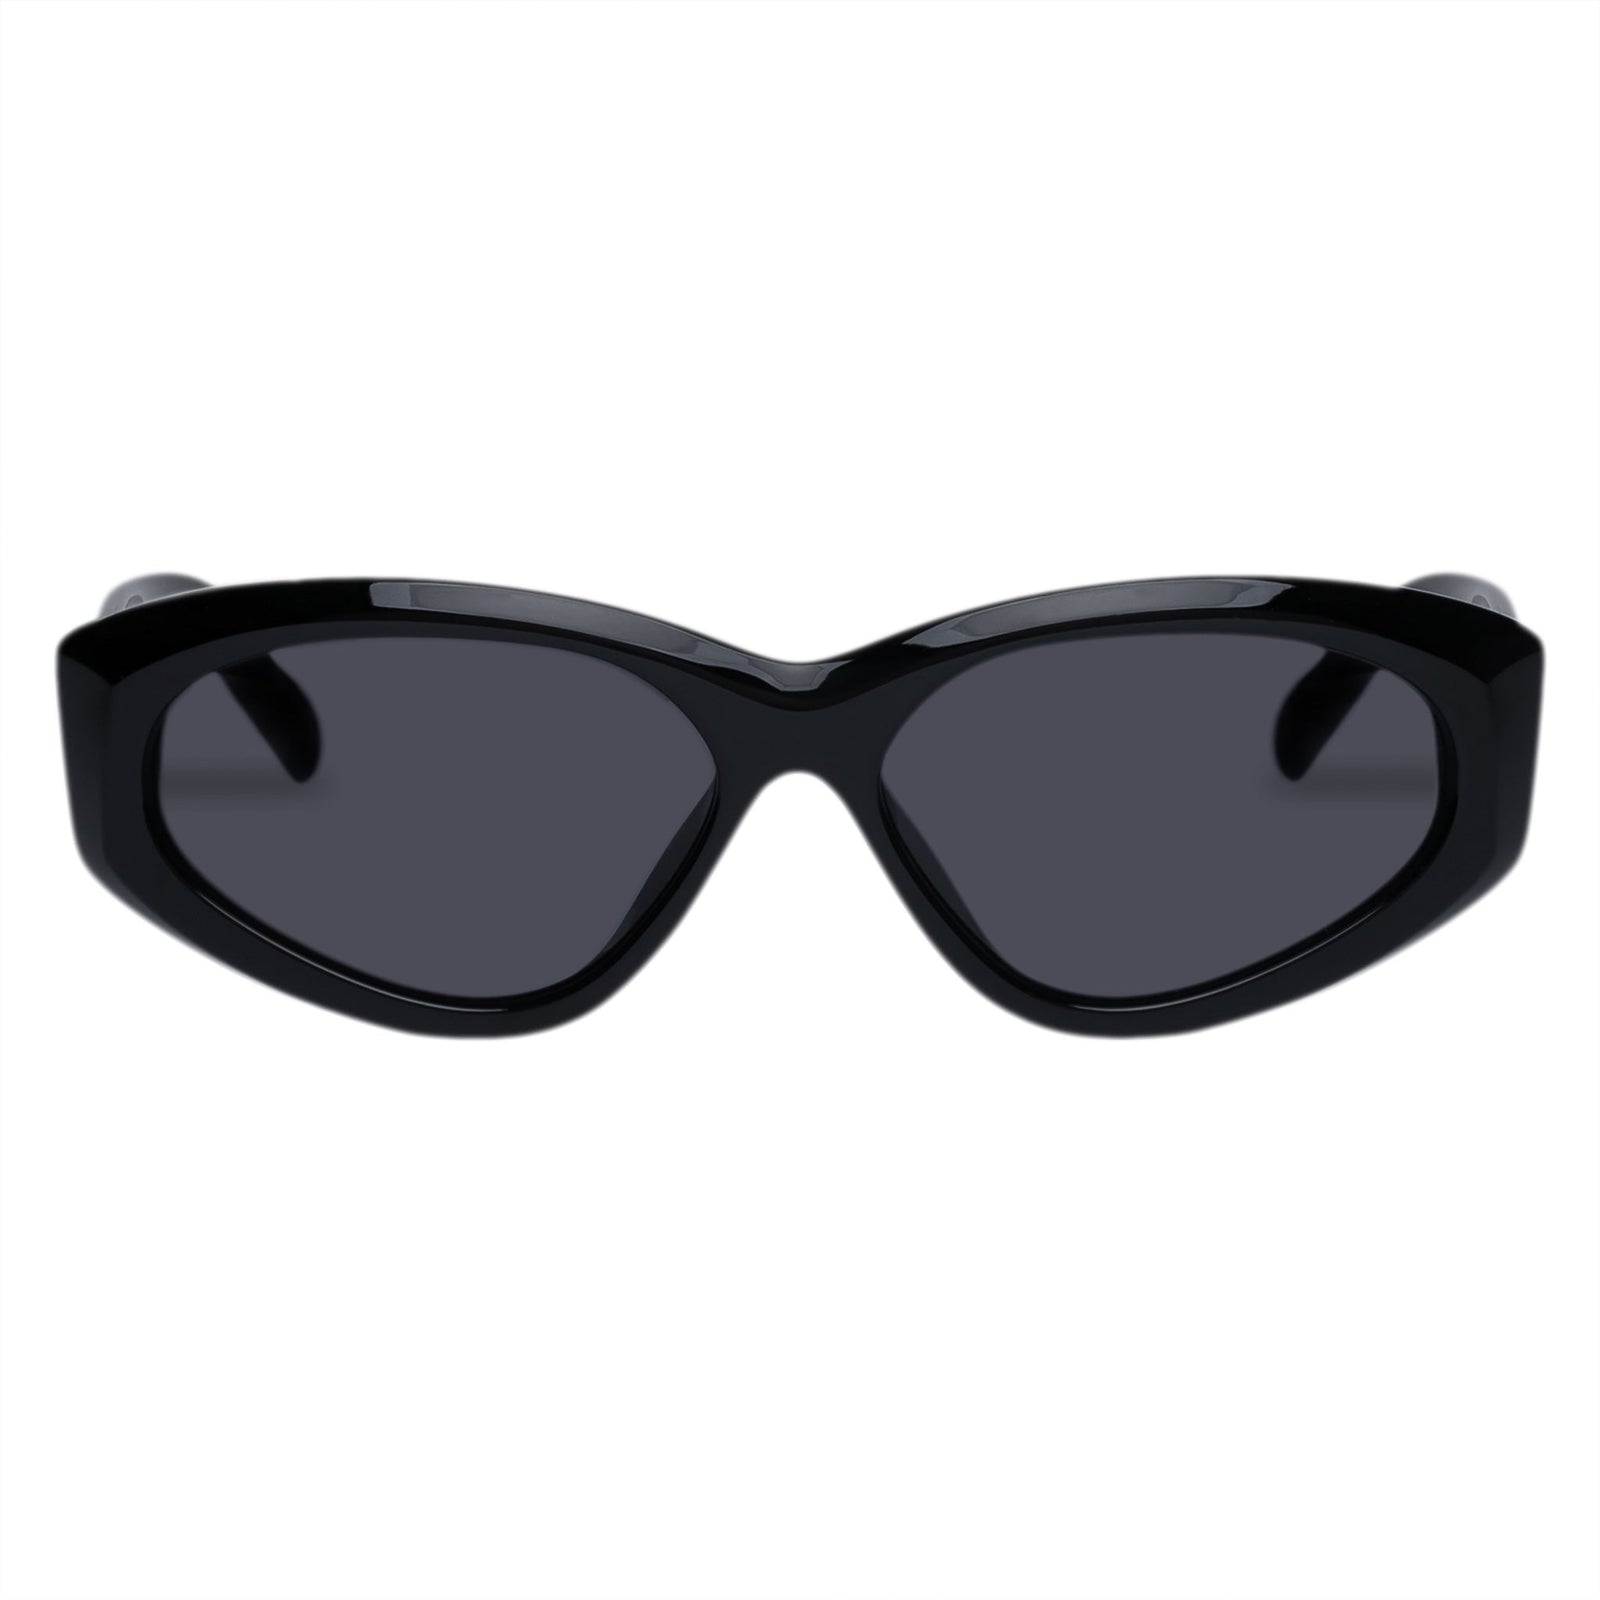 Sunglasses Uni-Sex Wraps Wrap Under Le Black Specs |